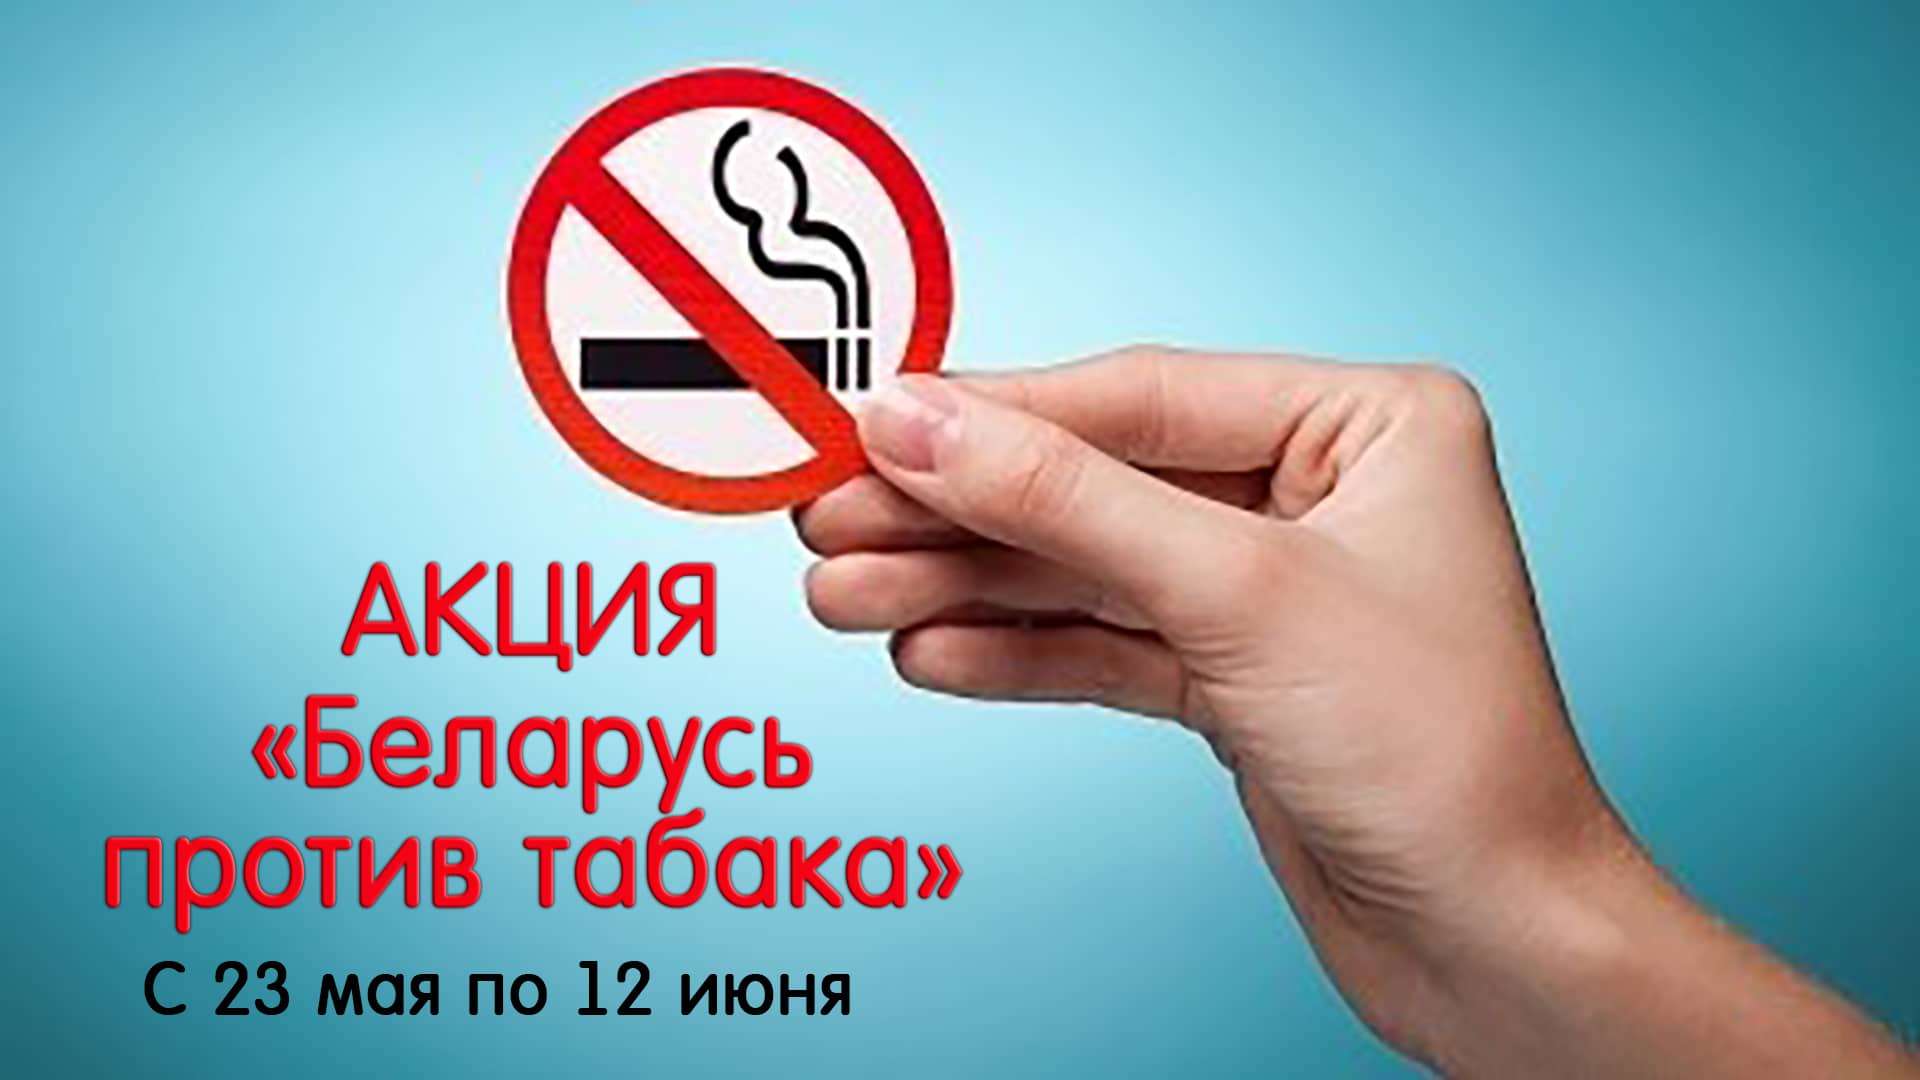 Акция Беларусь против табака